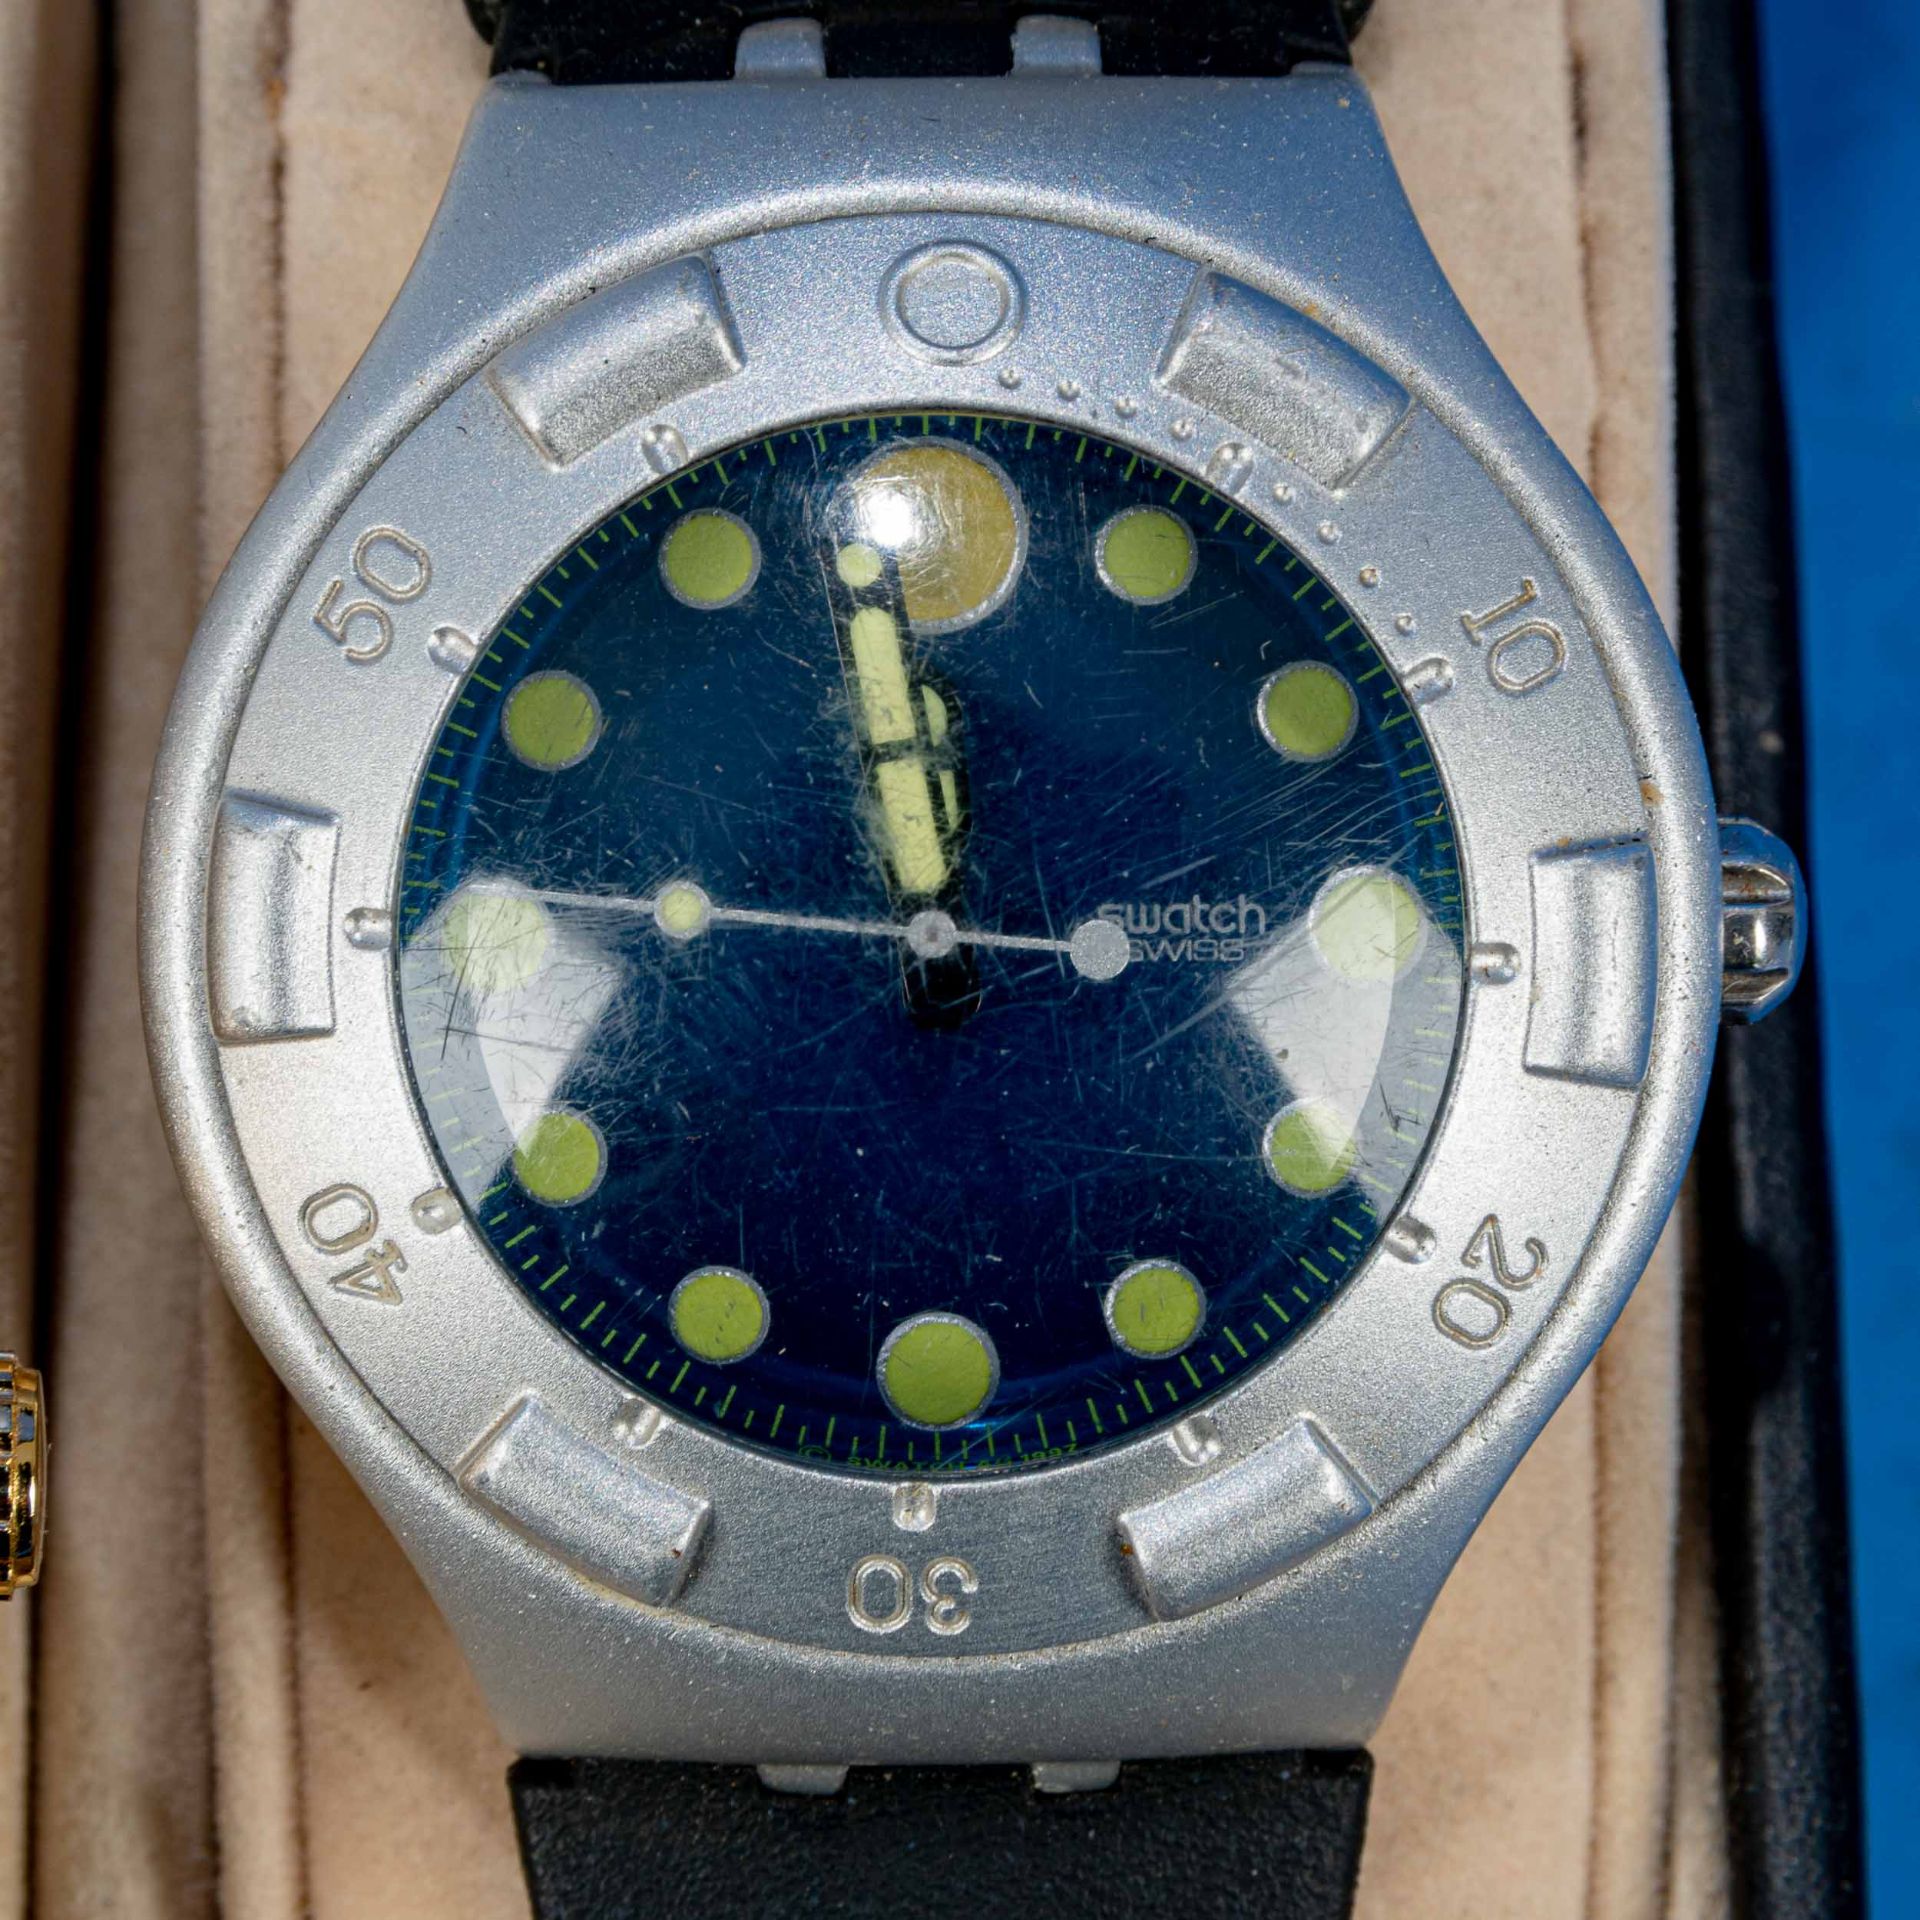 7teilige Uhrensammlung, u. a. der Marke Swatch; versch. Alter, Größen, Materialien, Hersteller, Wer - Bild 7 aus 8